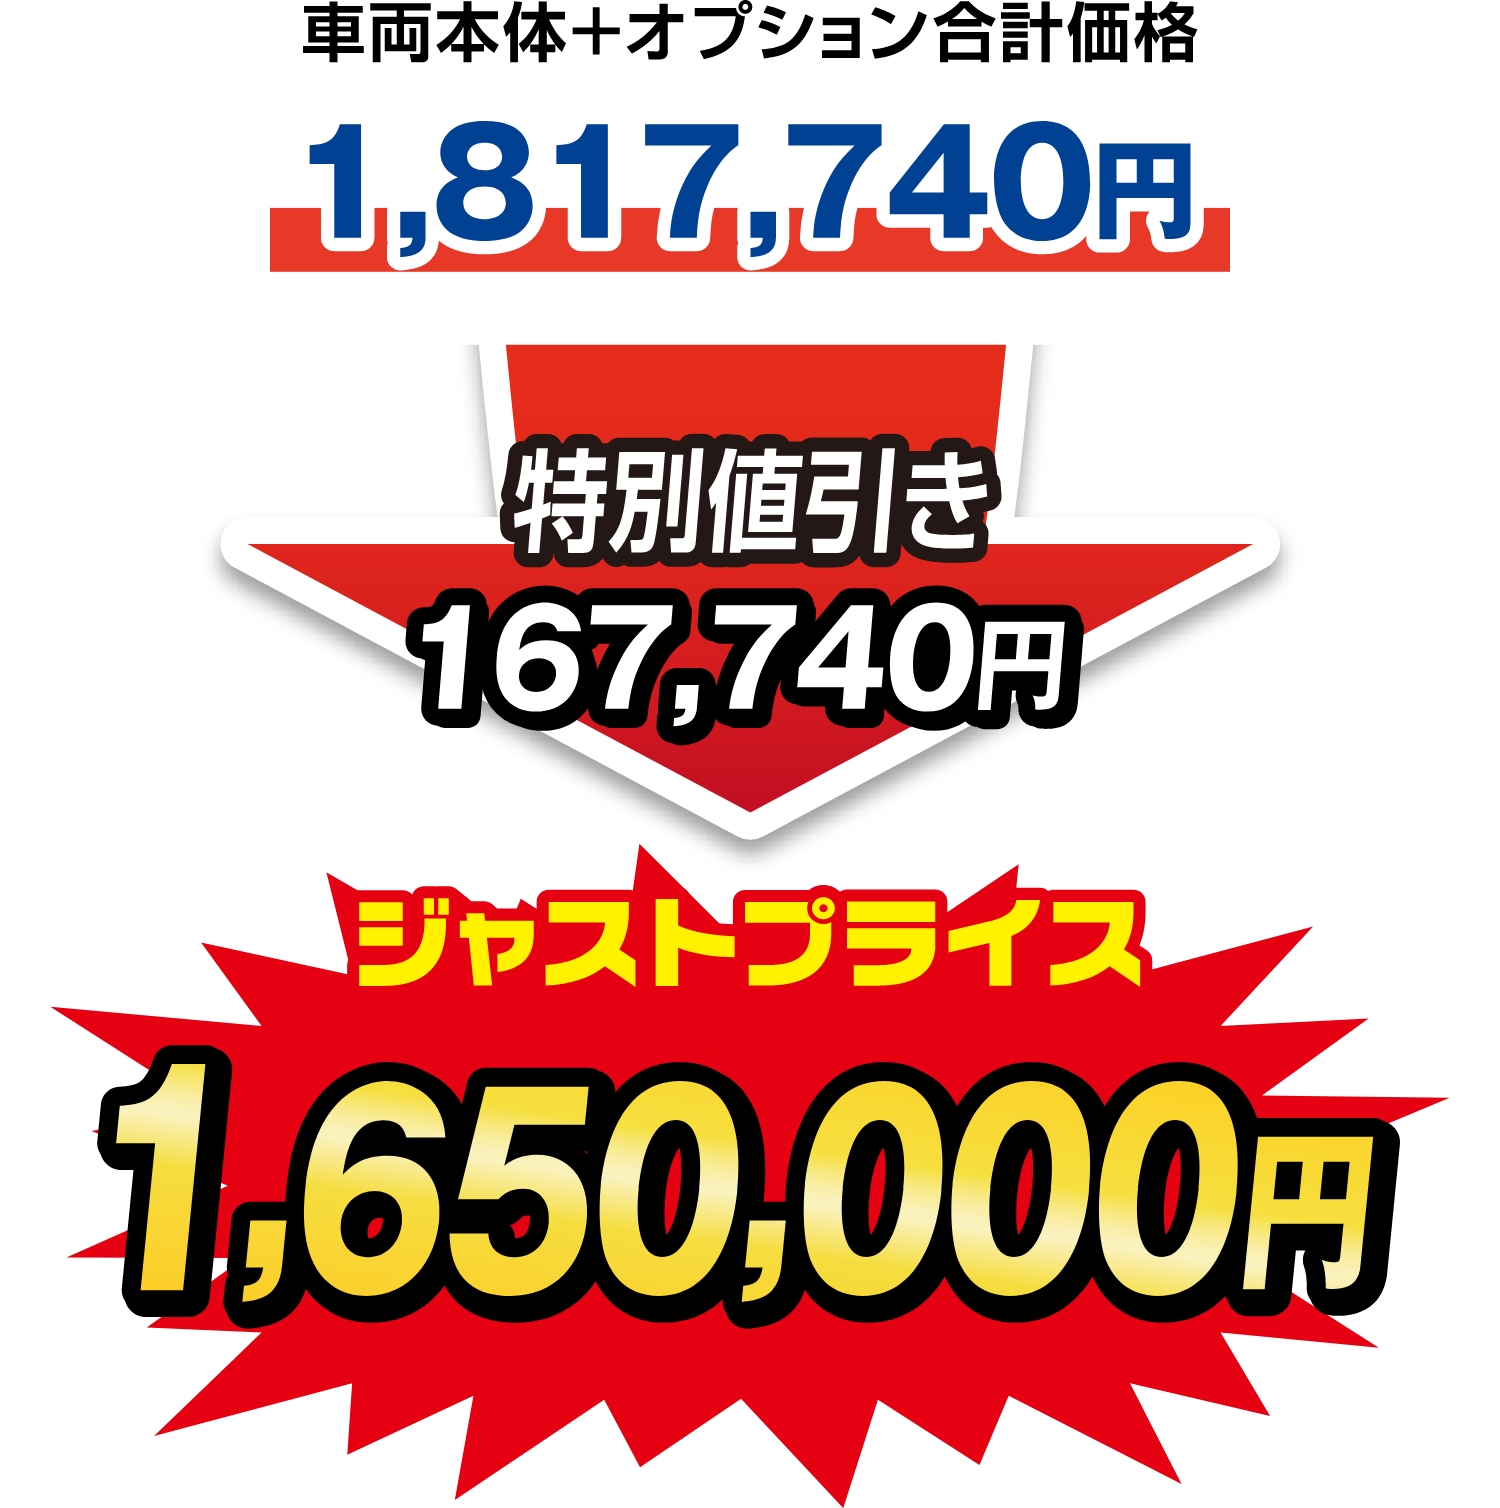 ジャストプライス1,650,000円